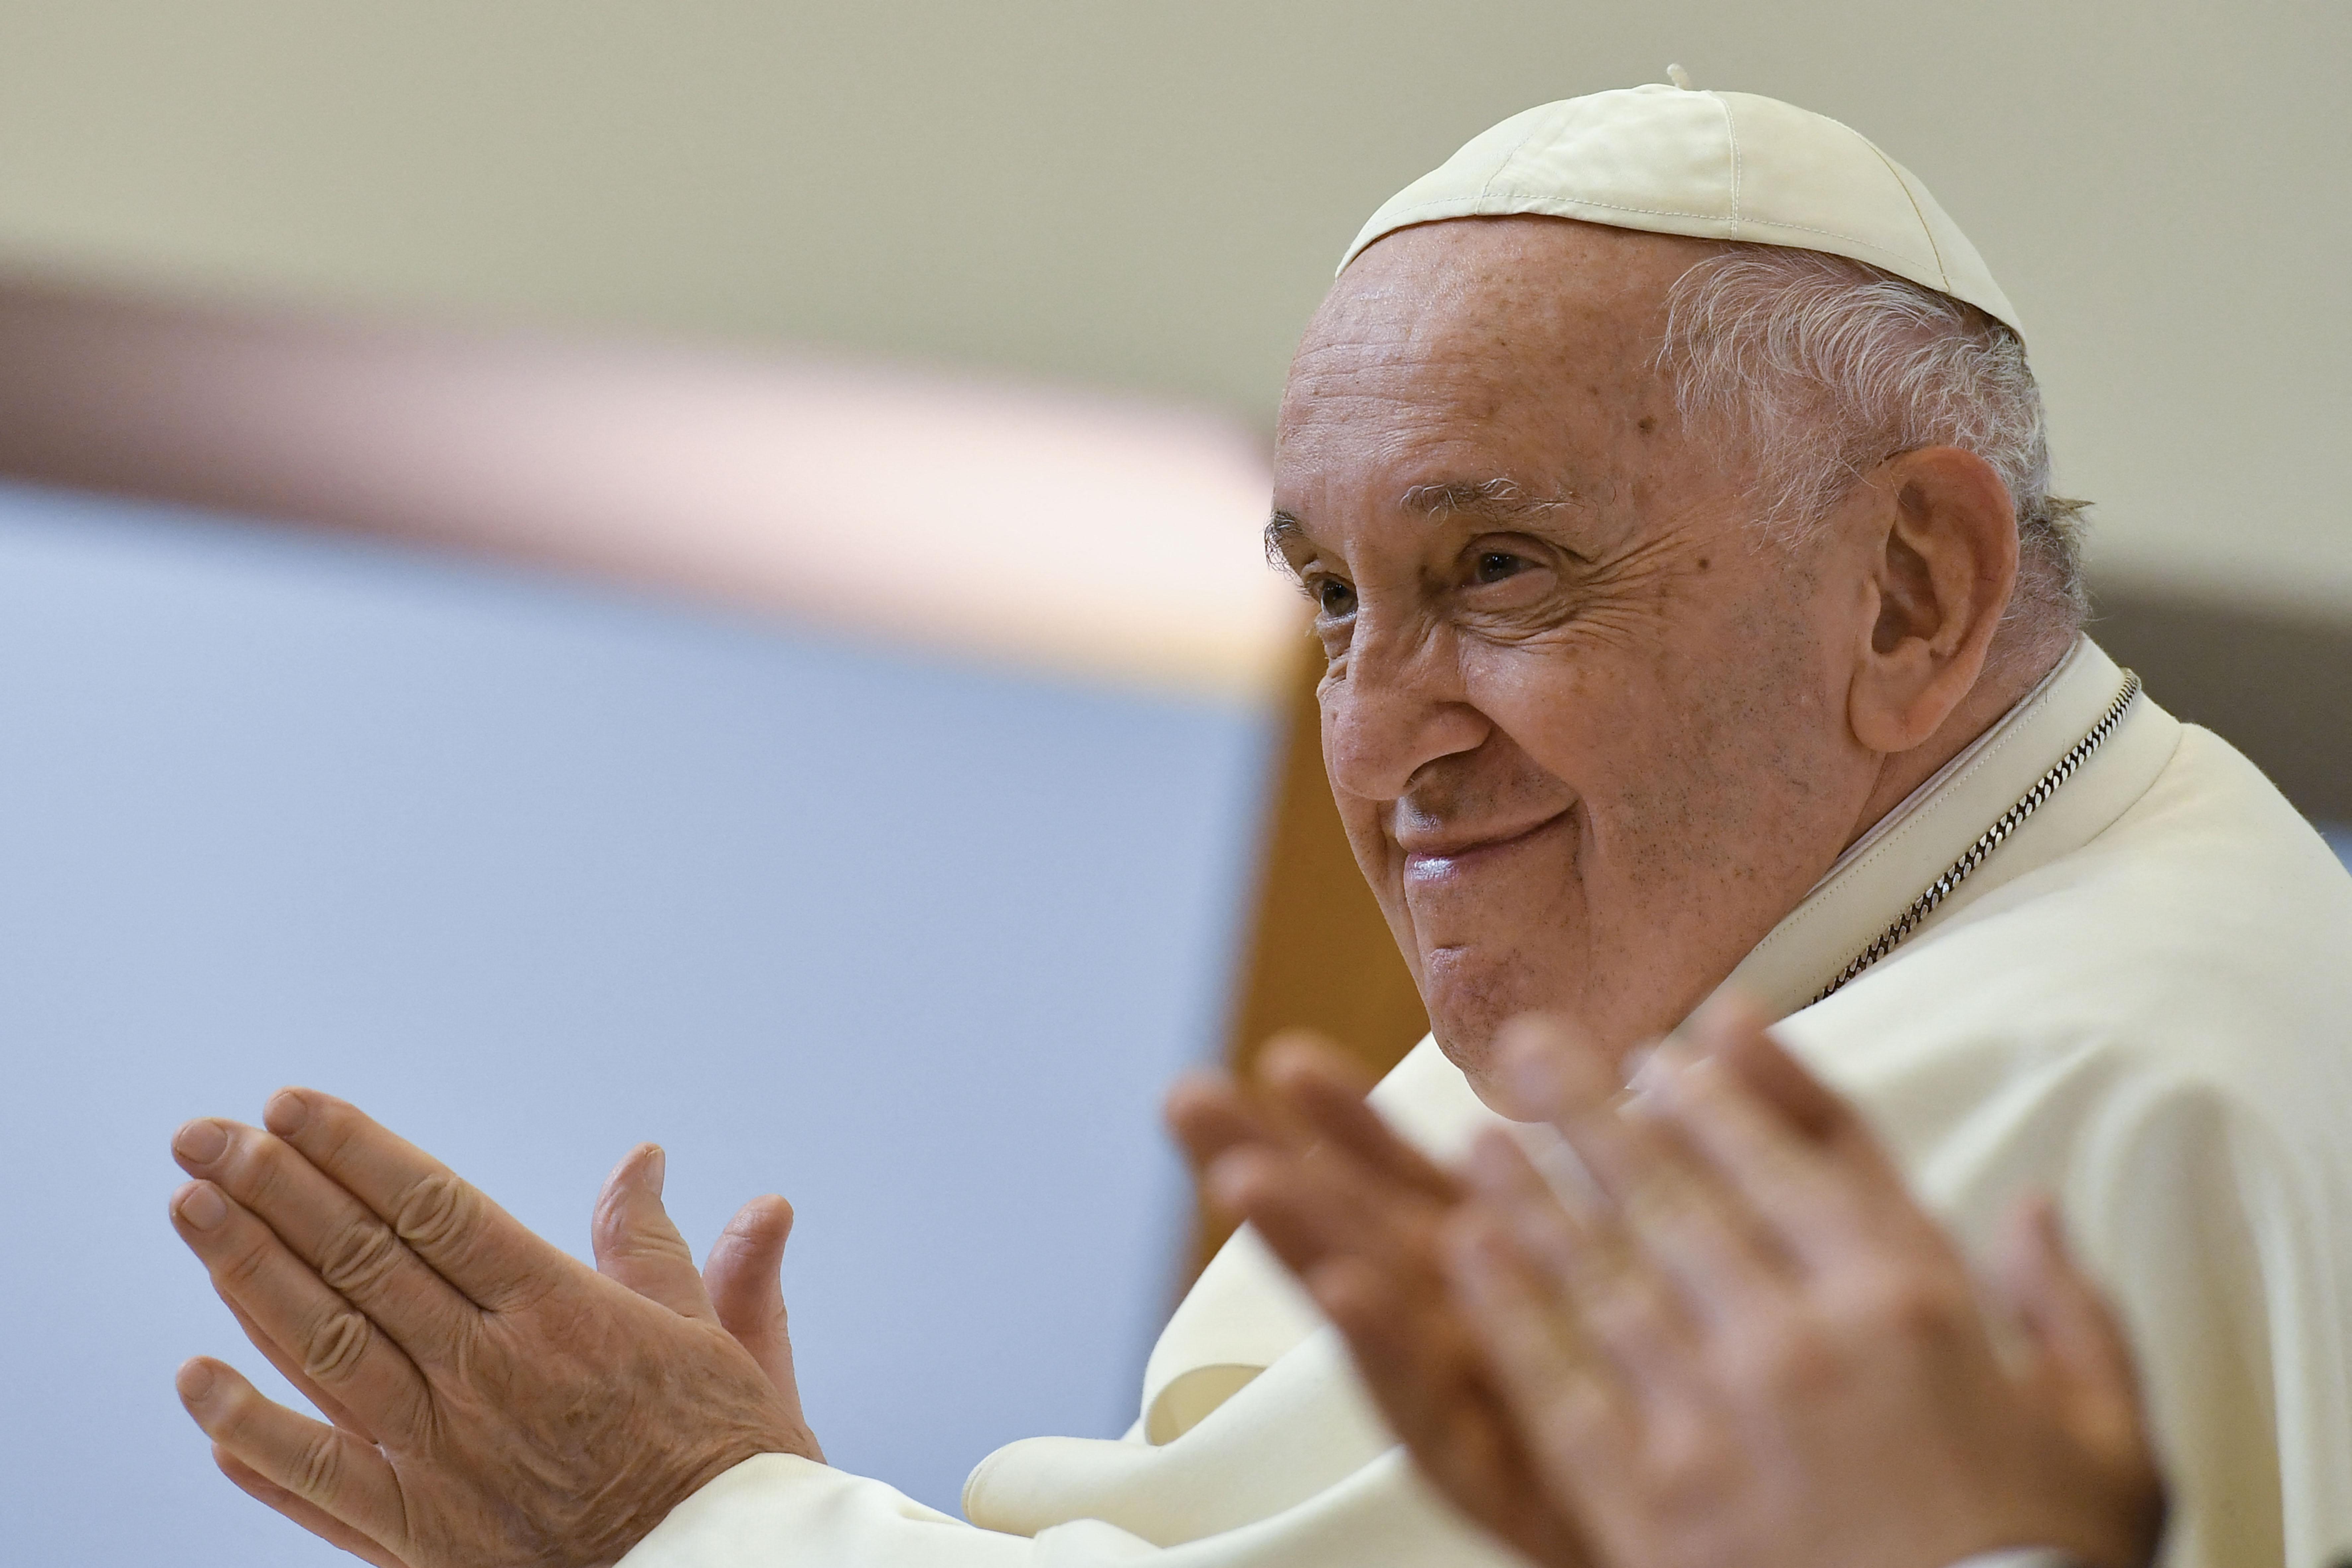 El papa Francisco dice que la desigualdad es “una herida dolorosa” en América Latina